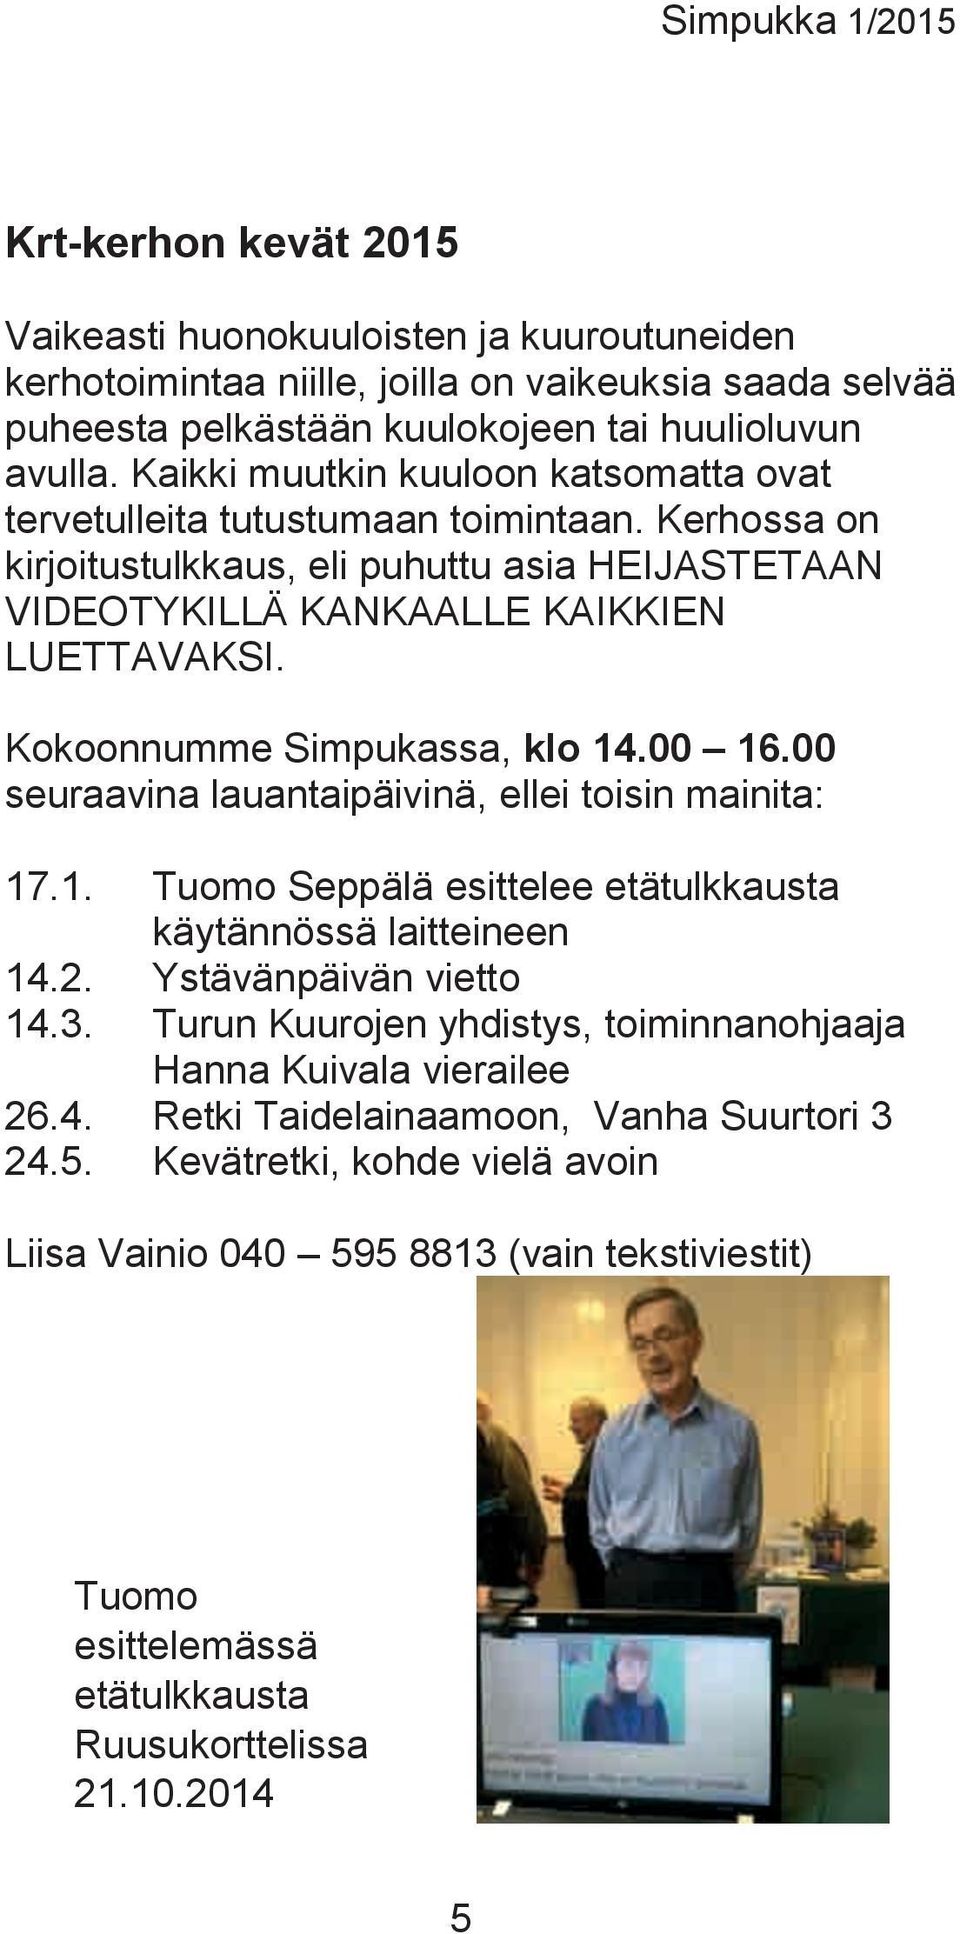 Kokoonnumme Simpukassa, klo 14.00 16.00 seuraavina lauantaipäivinä, ellei toisin mainita: 17.1. Tuomo Seppälä esittelee etätulkkausta käytännössä laitteineen 14.2. Ystävänpäivän vietto 14.3.